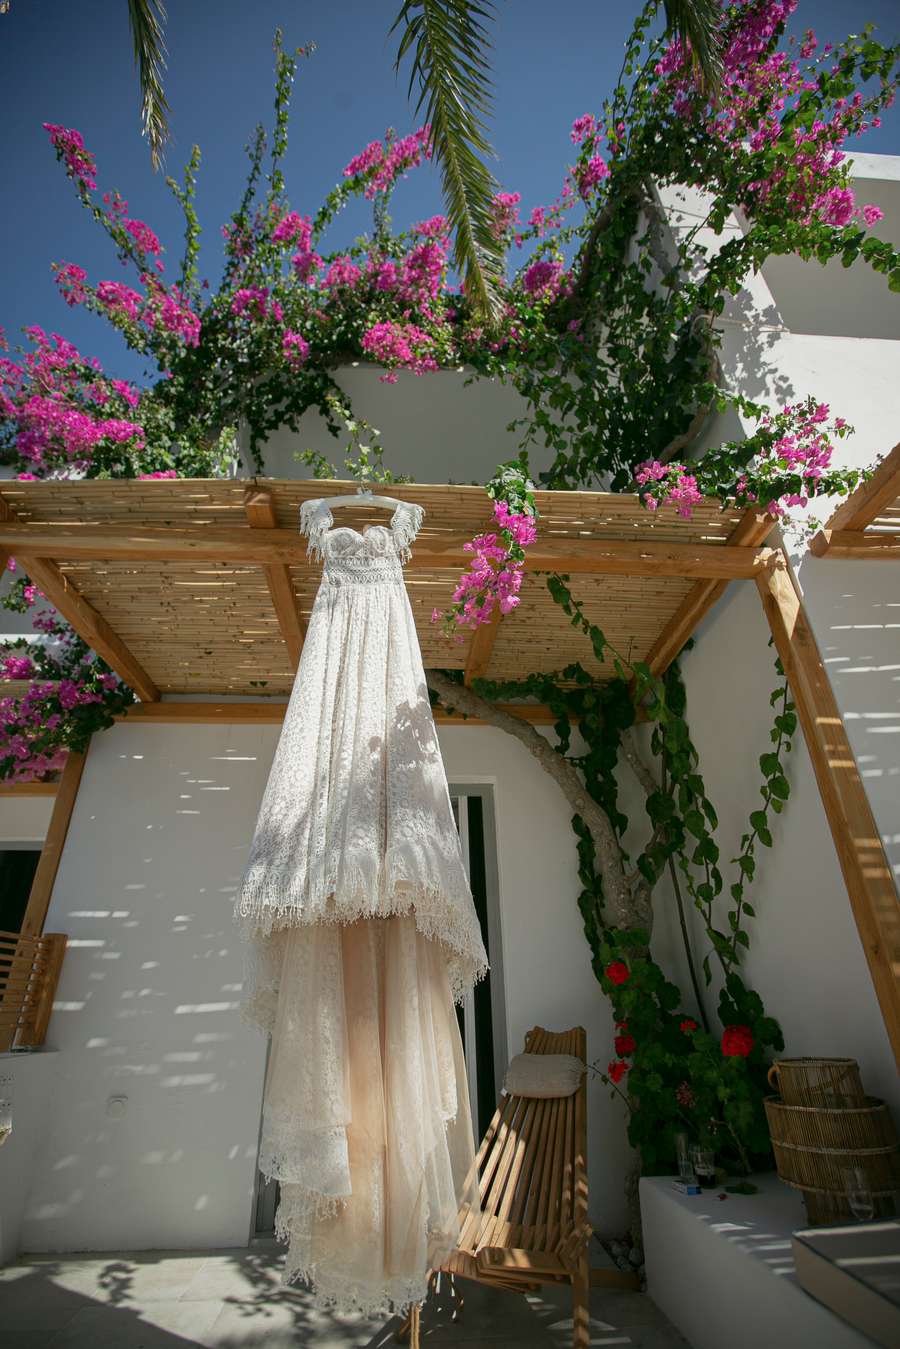 Άγγελος & Φιλαρέτη - Θεσσαλονίκη : Real Wedding by Keys Of Art